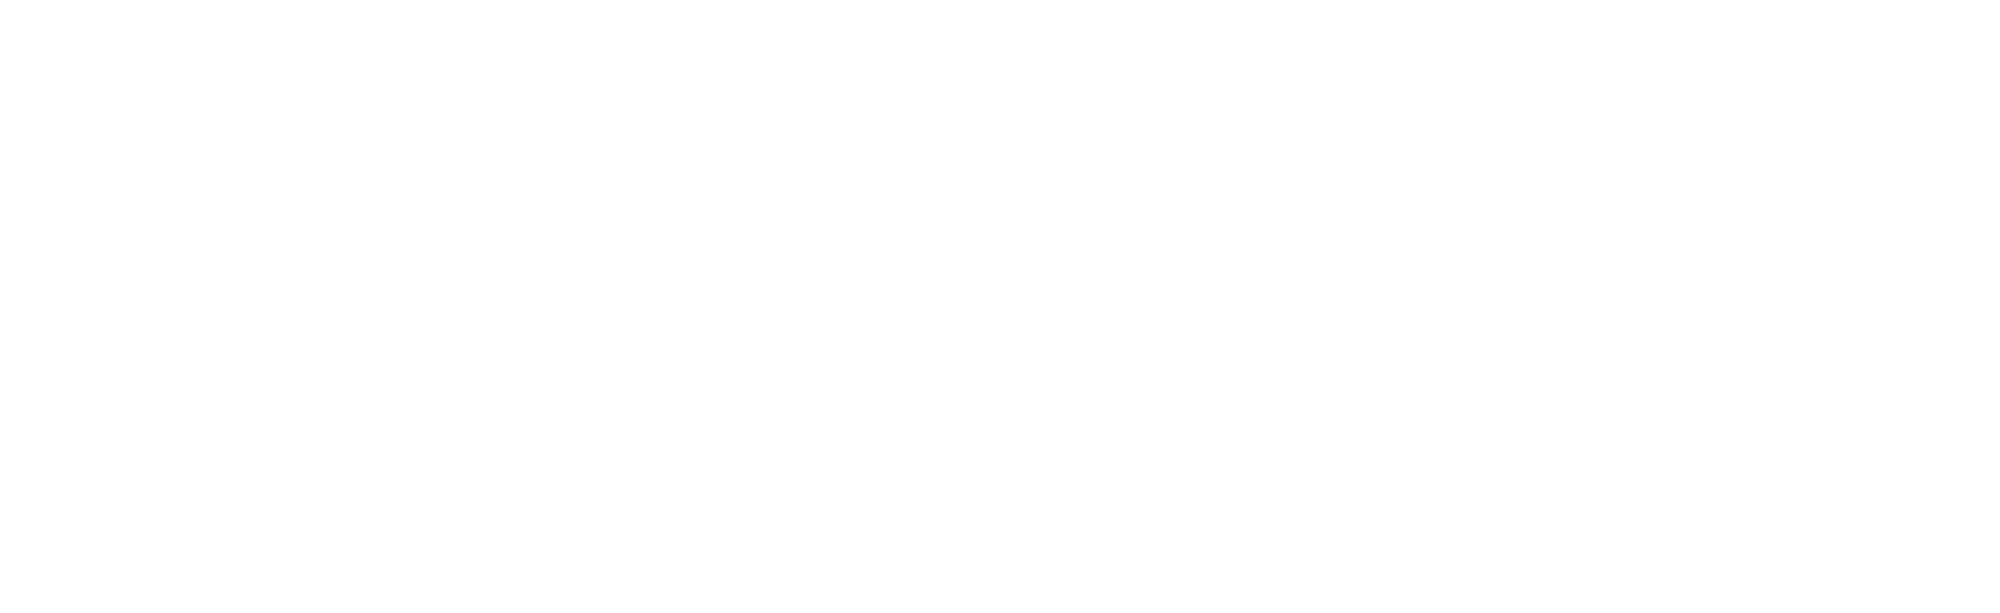 Boxycle.org